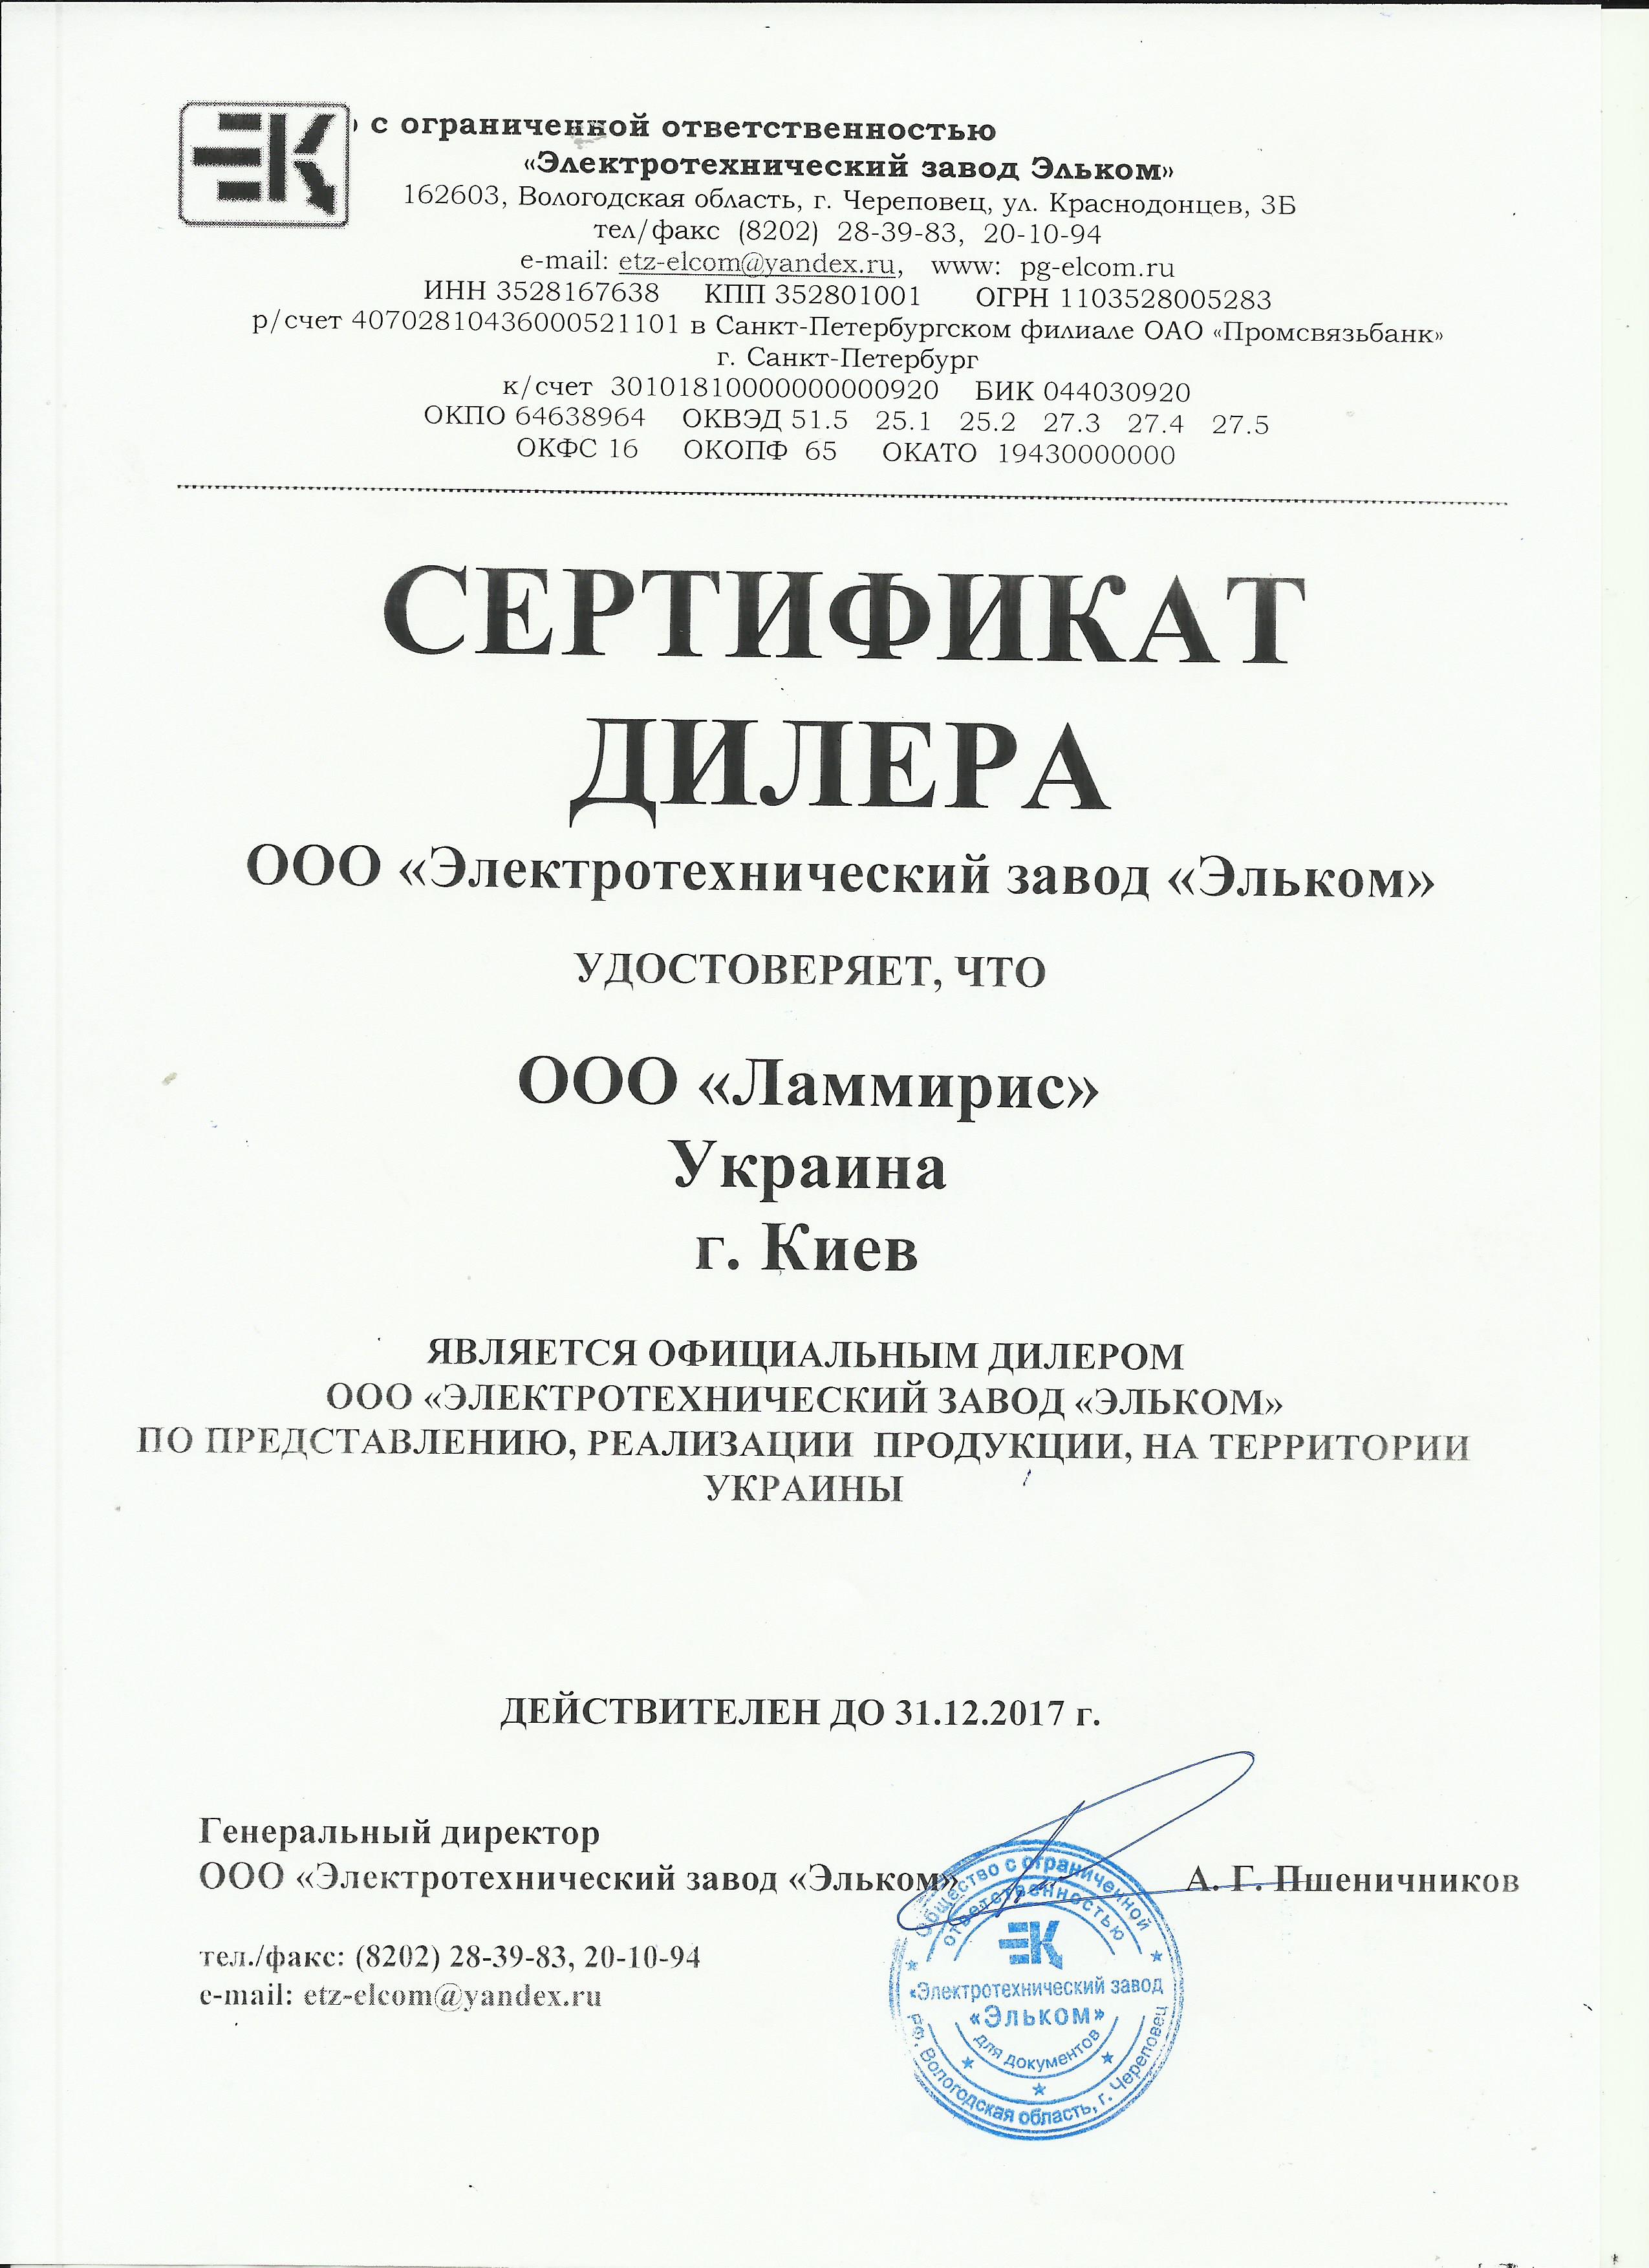 Сертификат Эльком